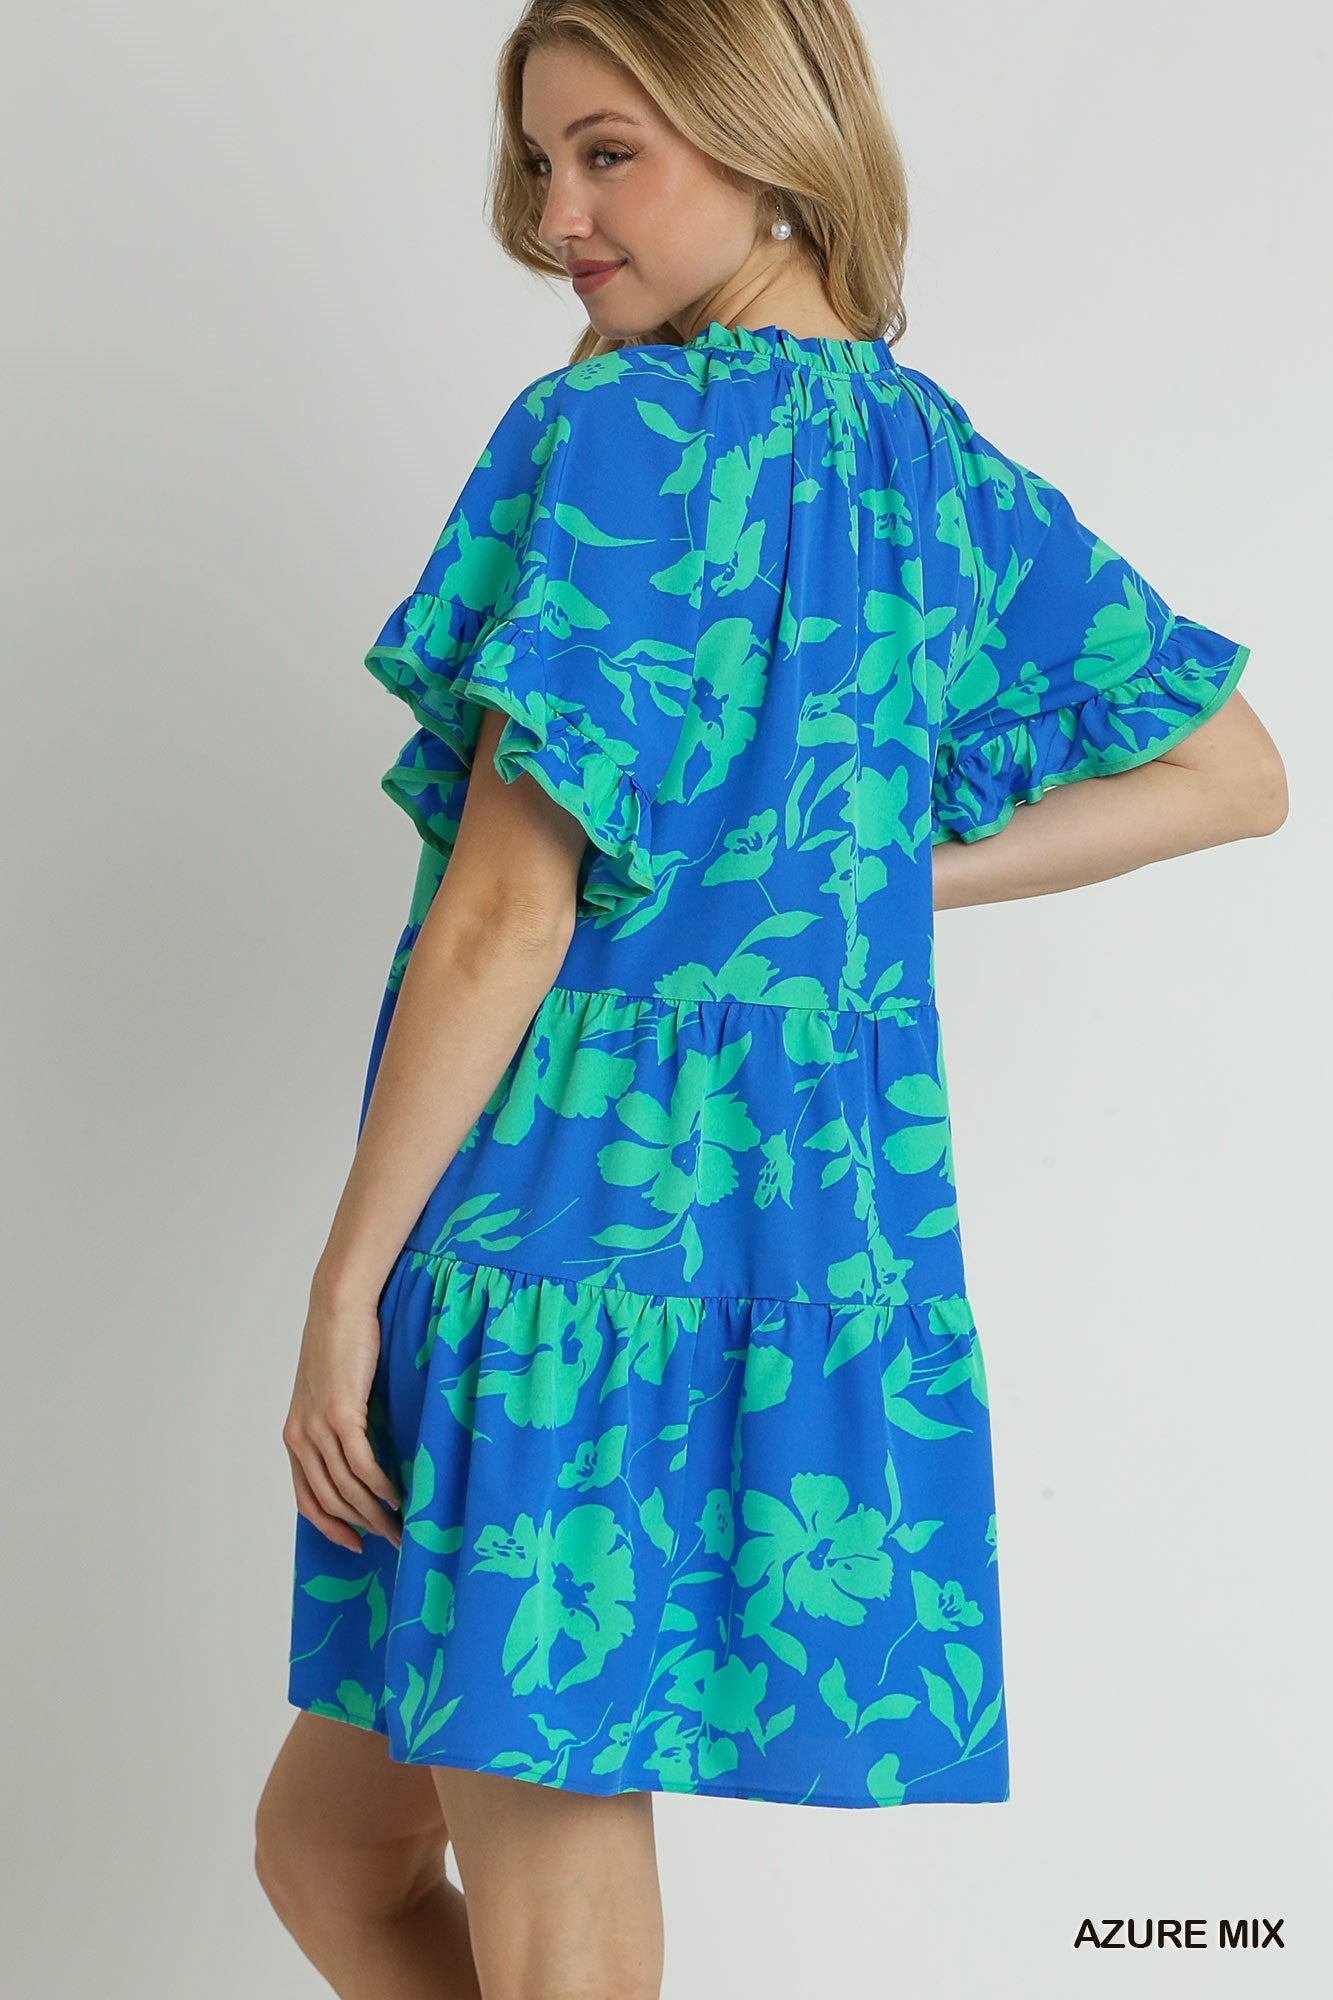 Azure Mix Floral Print Tiered Dress